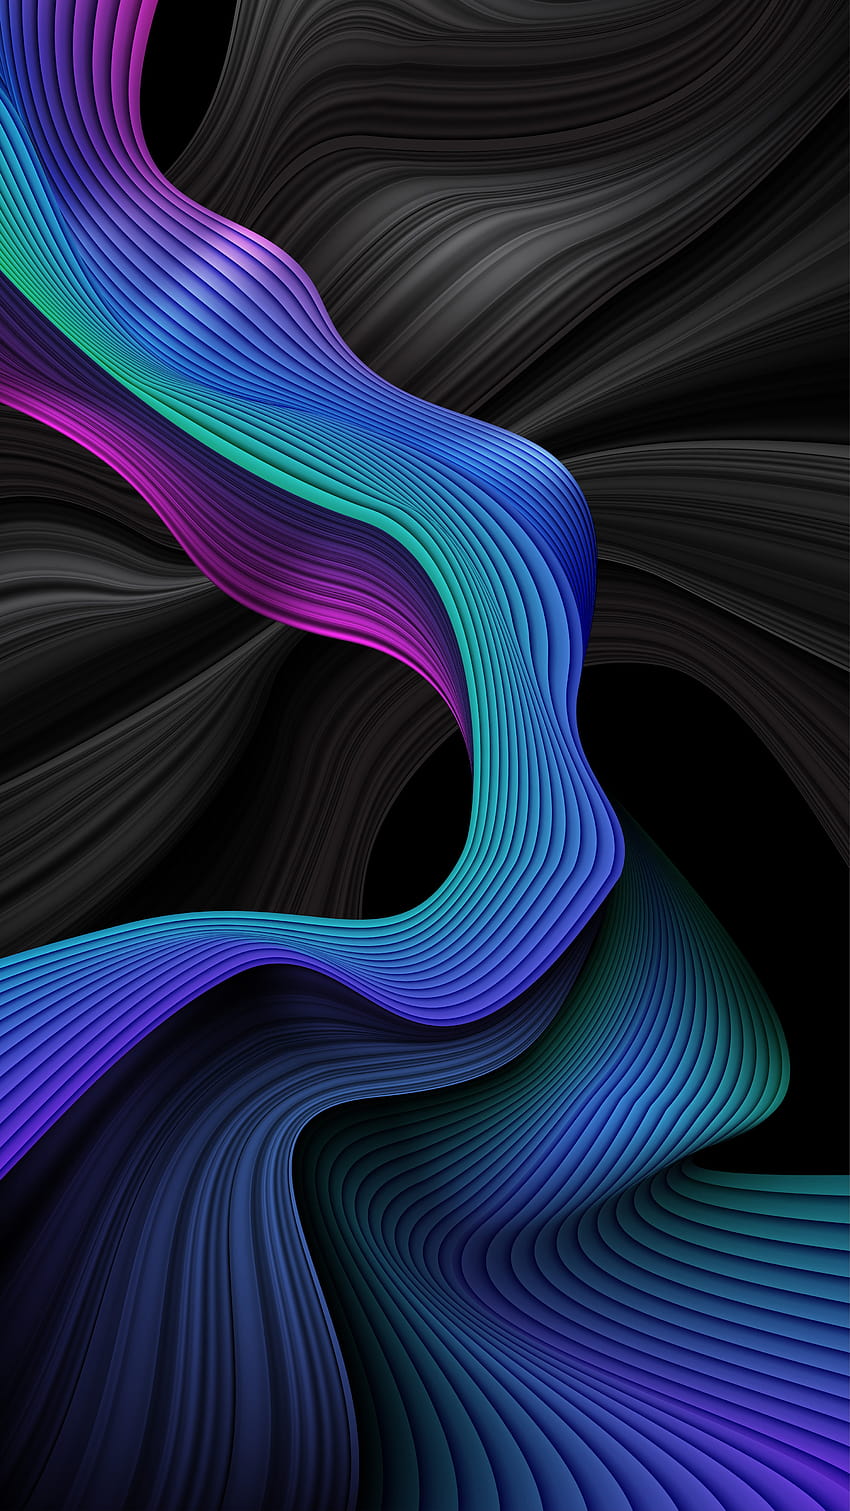 s de rayas onduladas abstractas en azul y negro 1211544 Arte vectorial en Vecteezy, líneas onduladas en espiral coloridas fondo de pantalla del teléfono